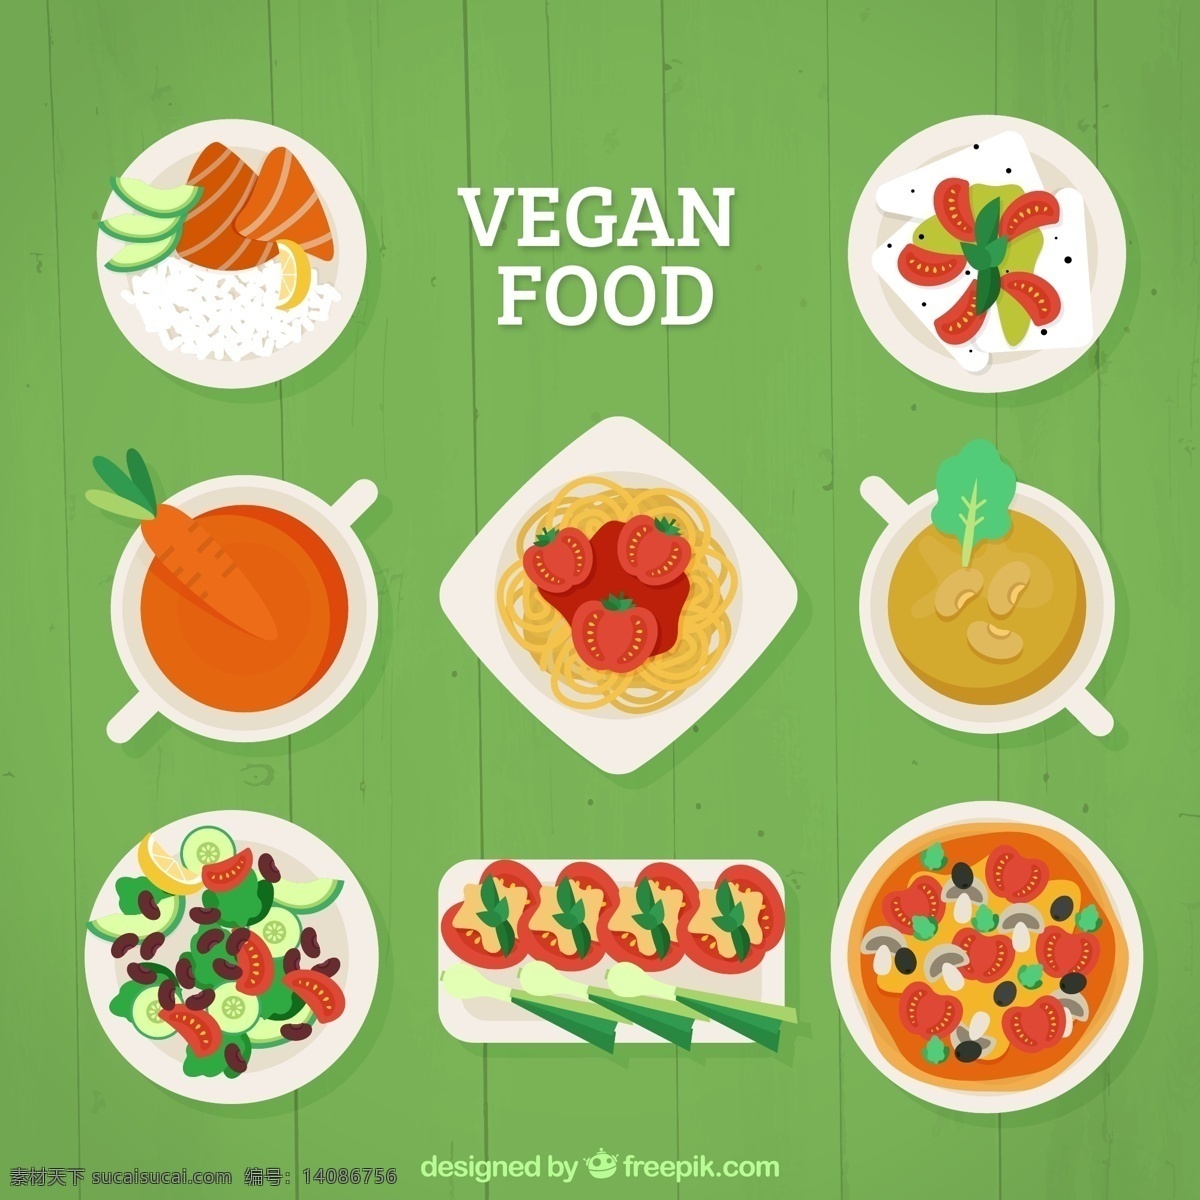 素食菜品展示 素食菜品 菜品展示 菜品 蔬菜菜品 绿色